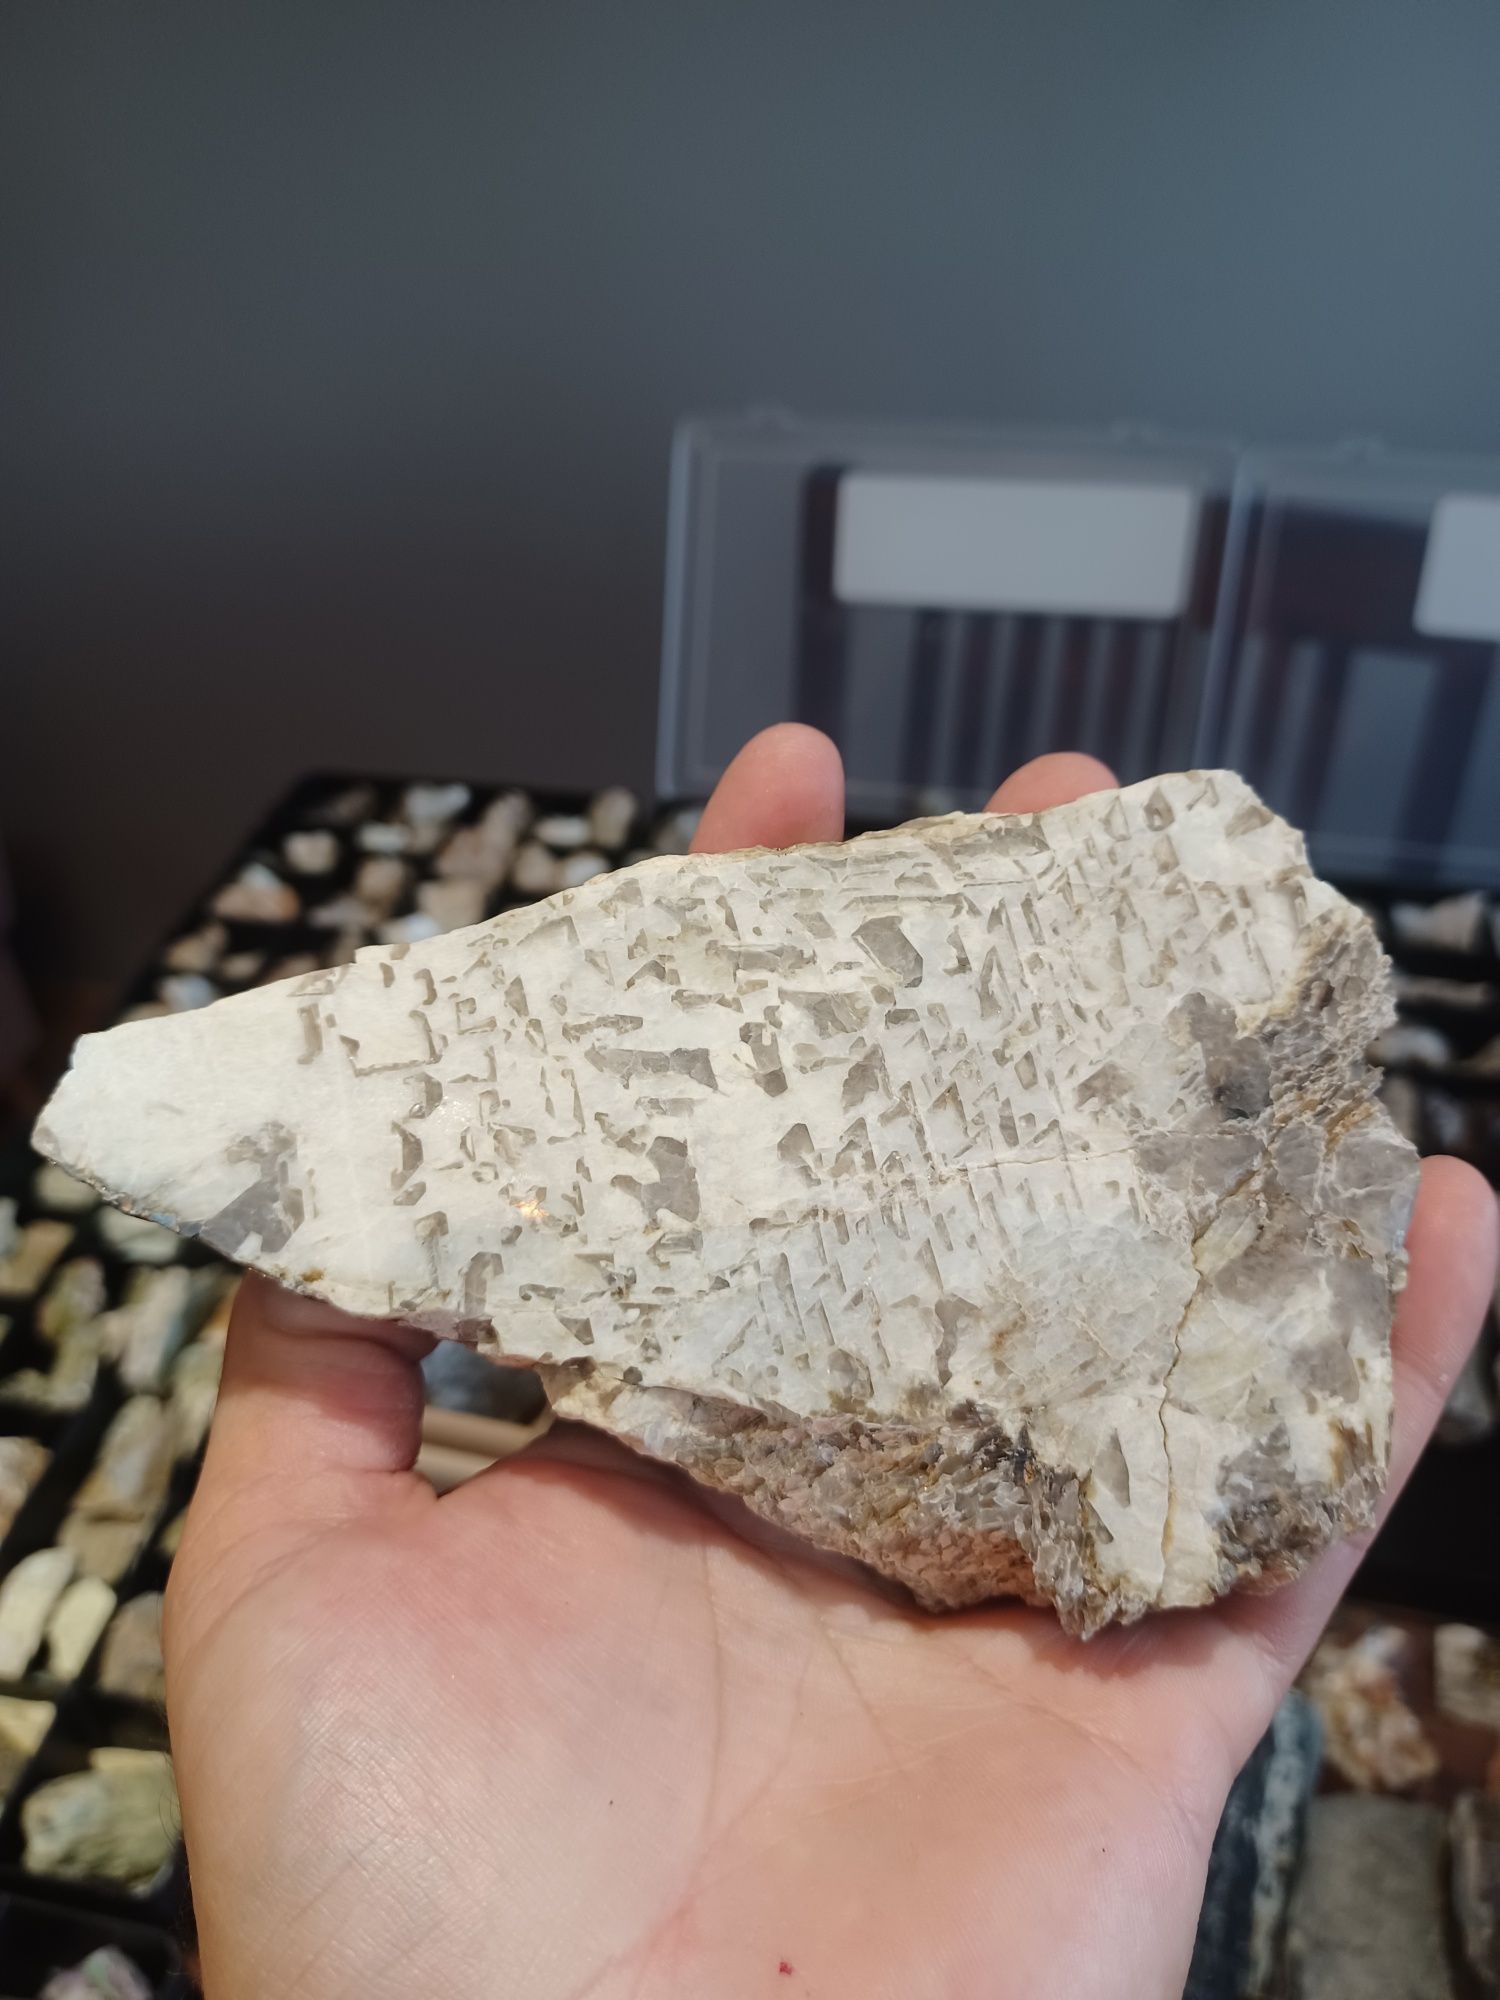 Minerały skamieniałości skały granit pismowy(pegmatyt)